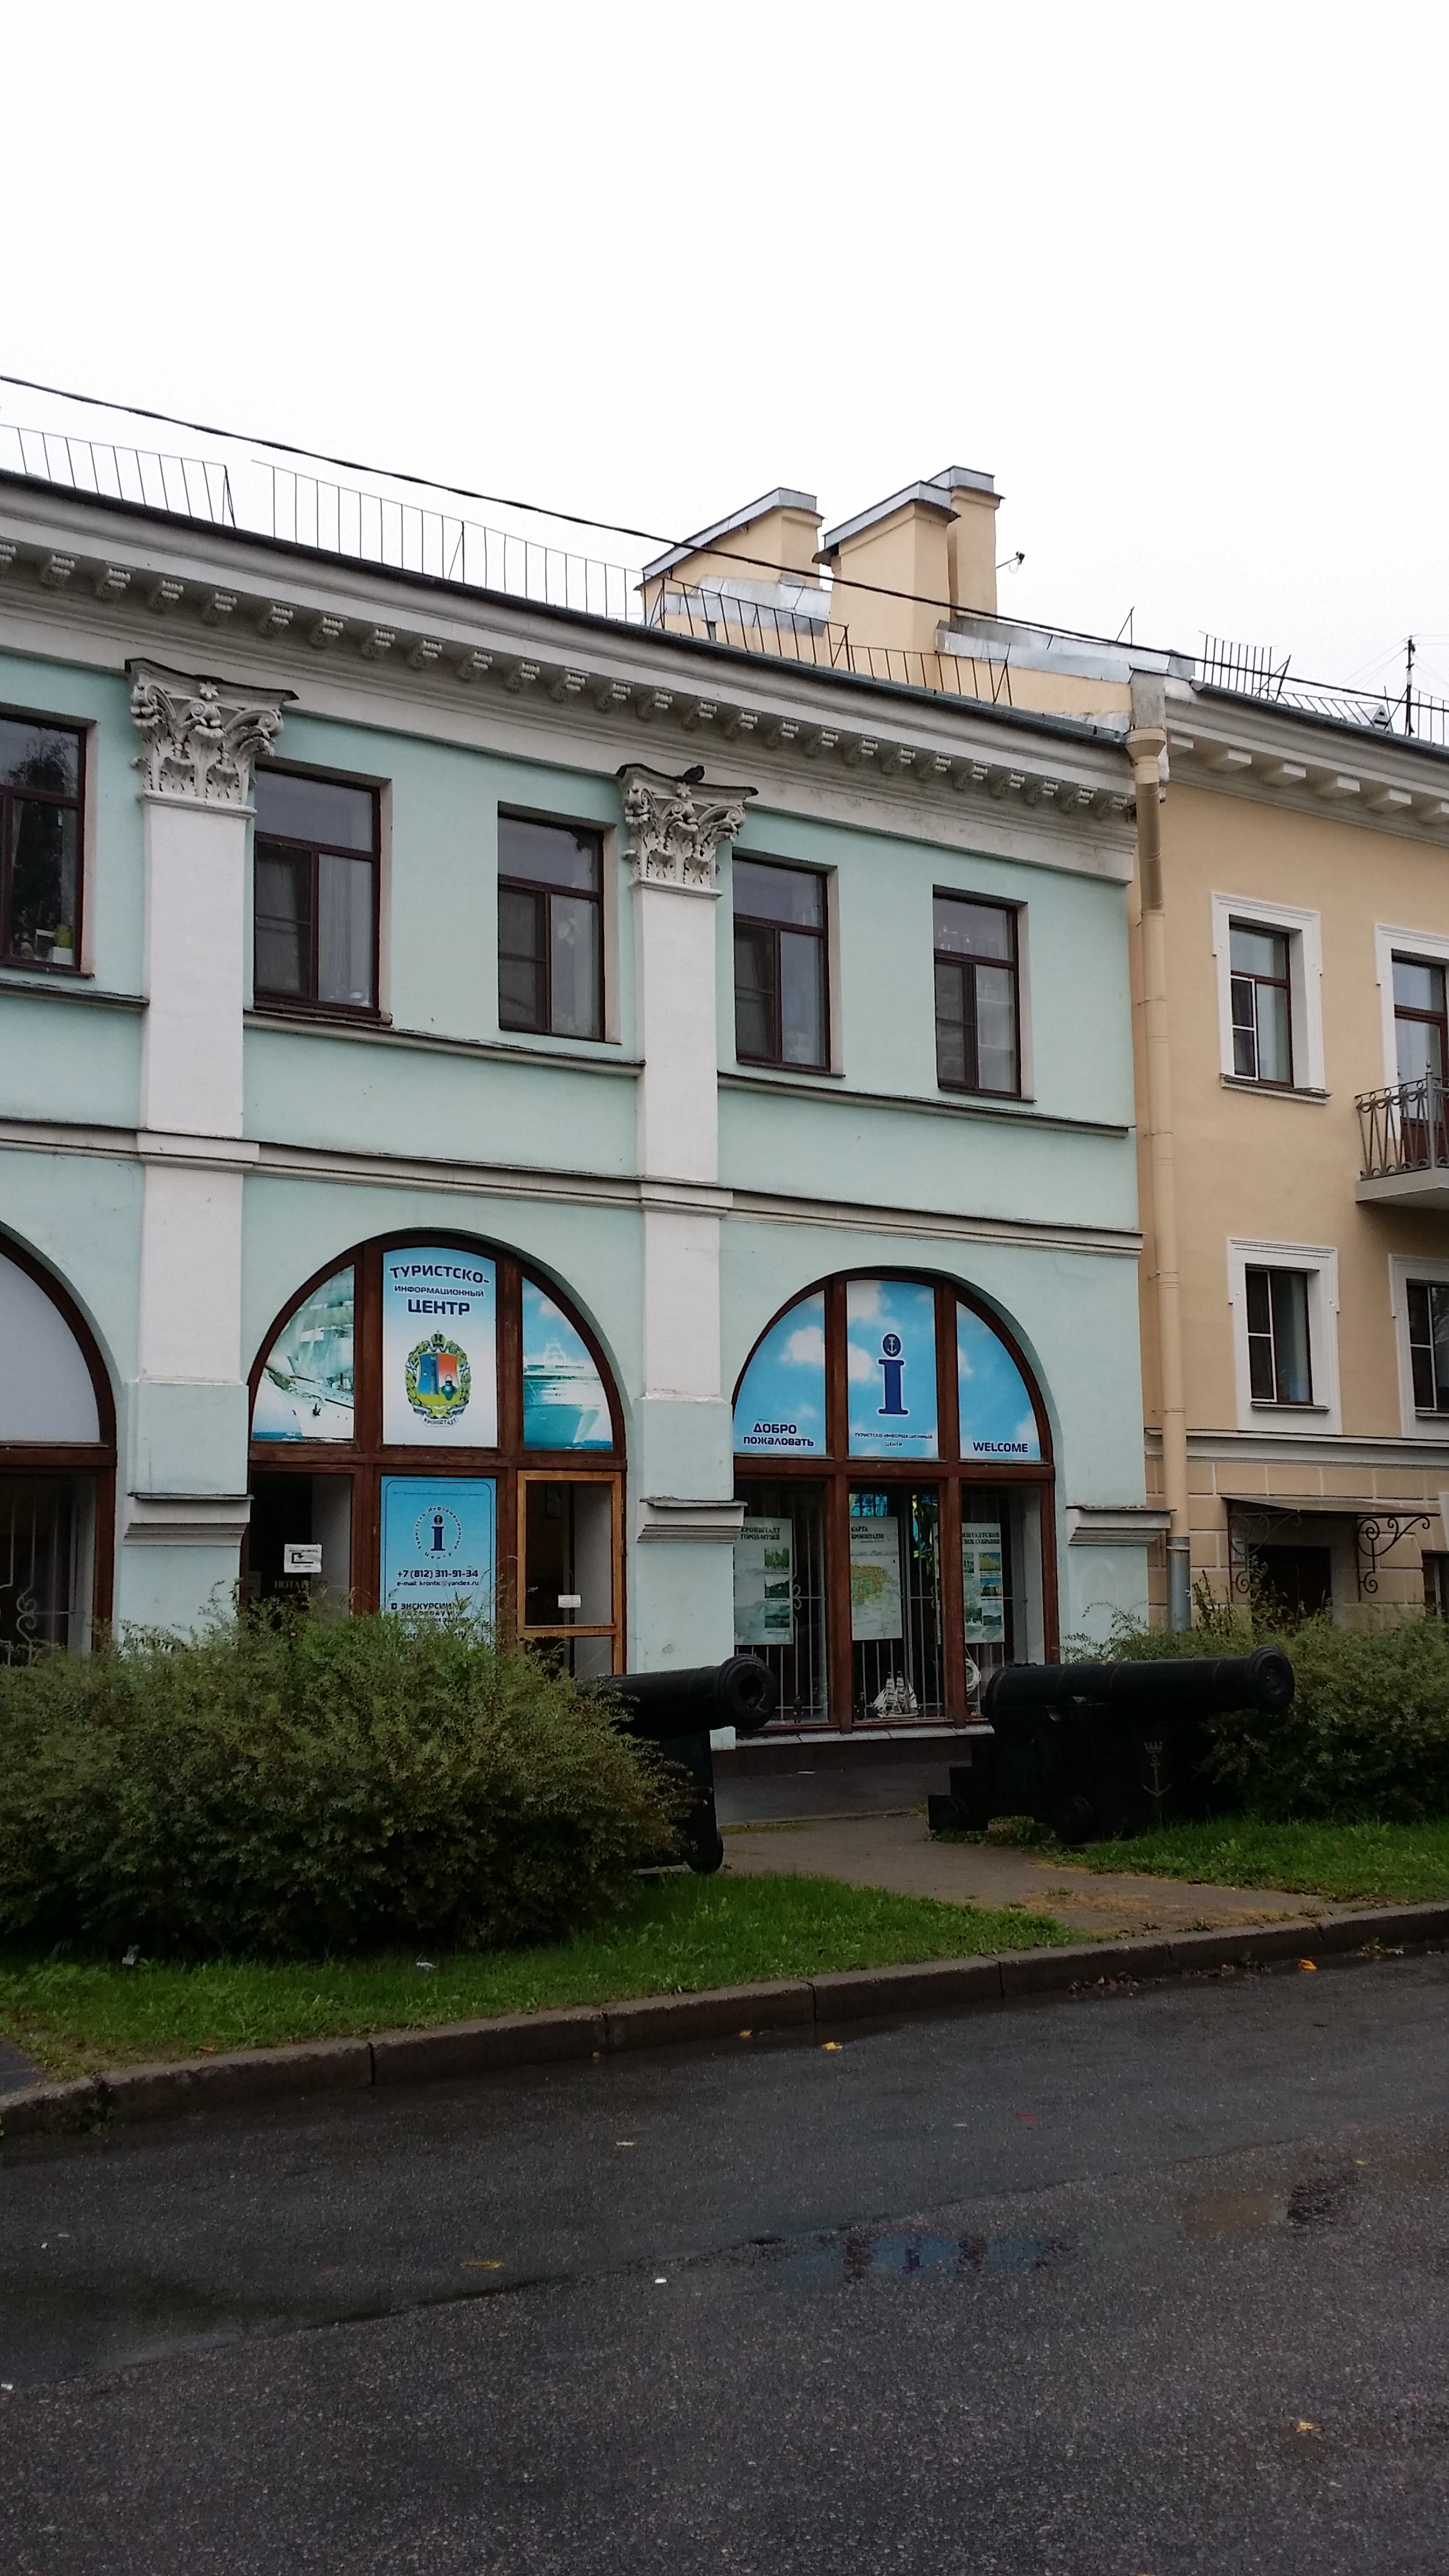 Информационно-культурный центр Музея истории Кронштадта